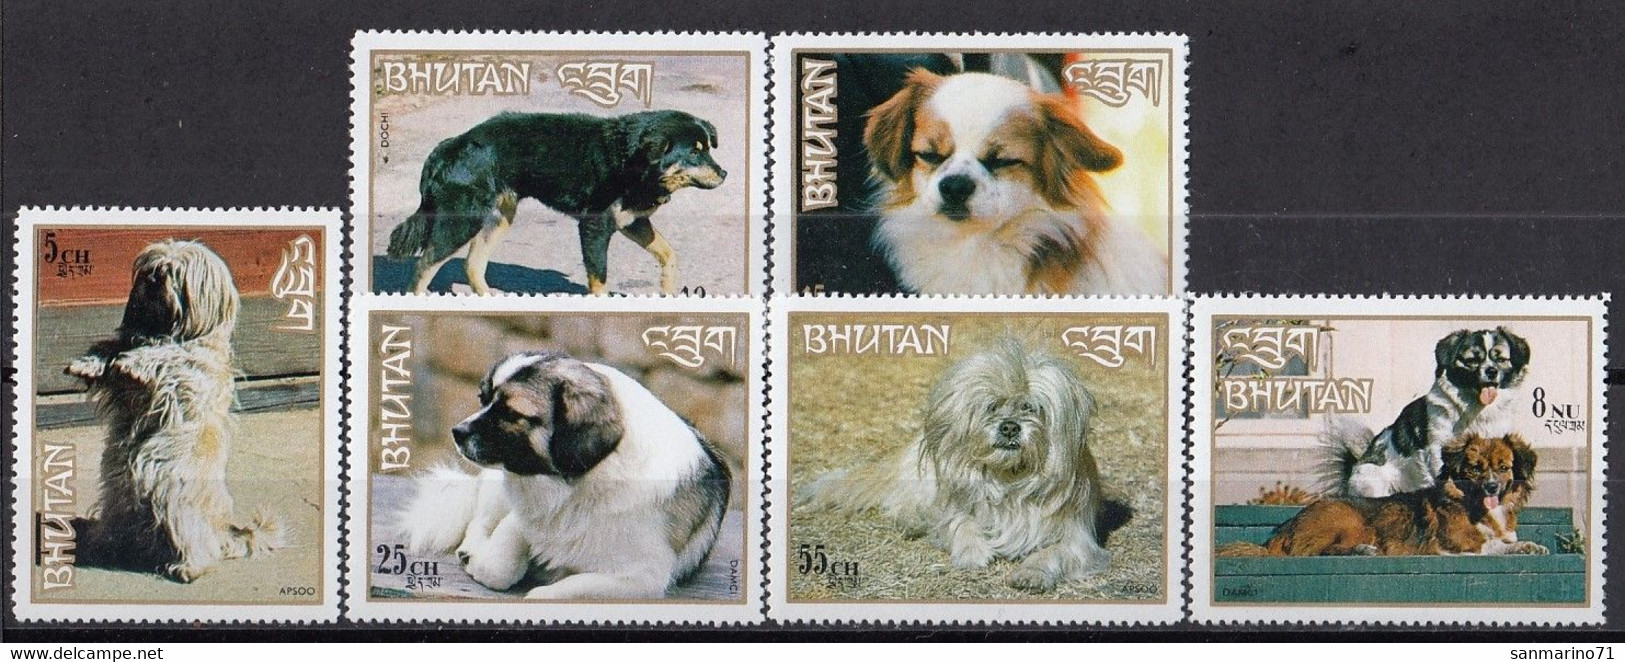 BHUTAN 530-535,unused,dogs - Cani